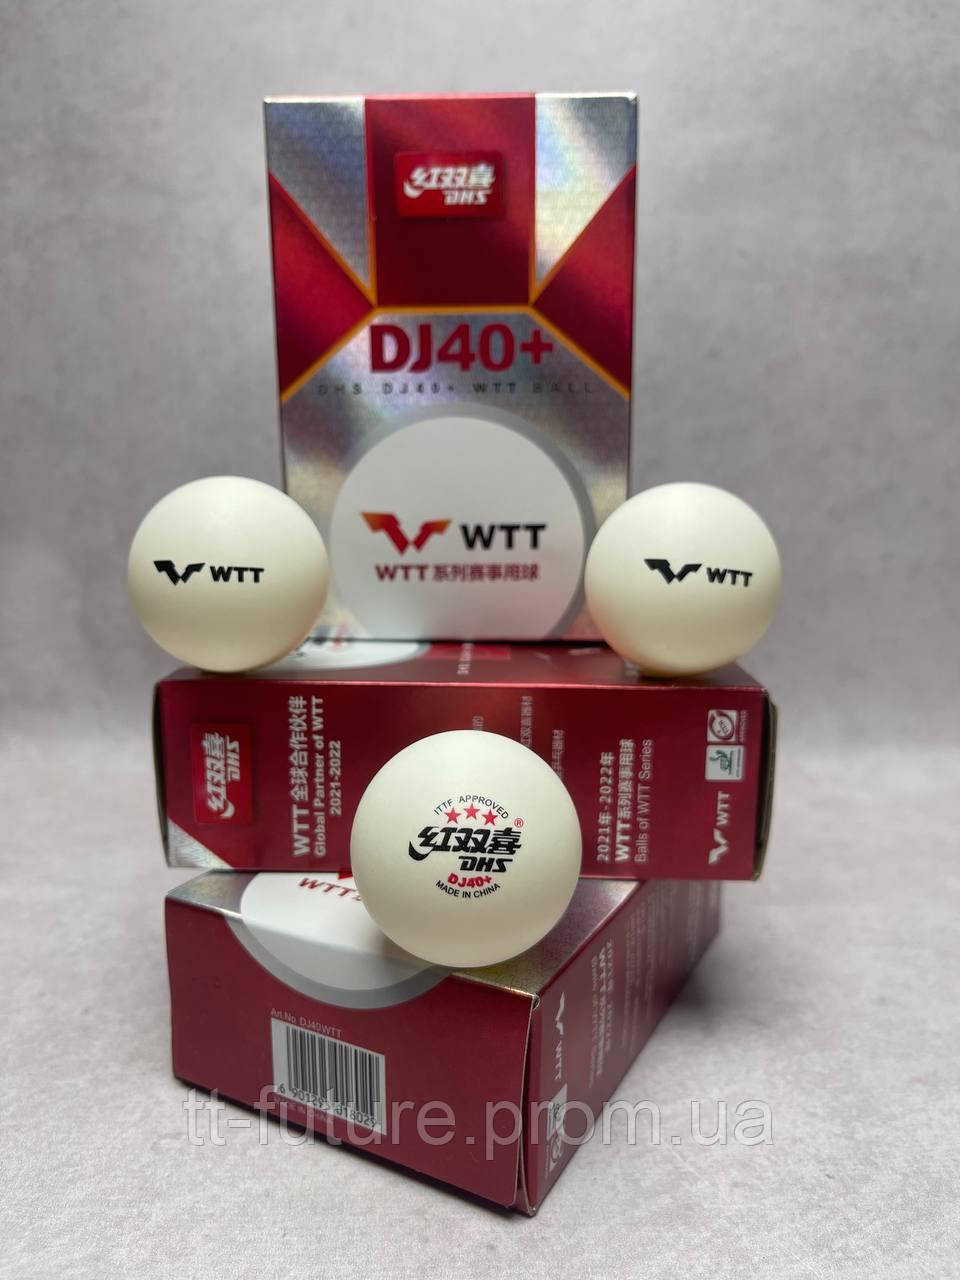 М'яч для настільного тенісу DHS WTT DJ40+ 3Star ITTF (6 шт./пач)